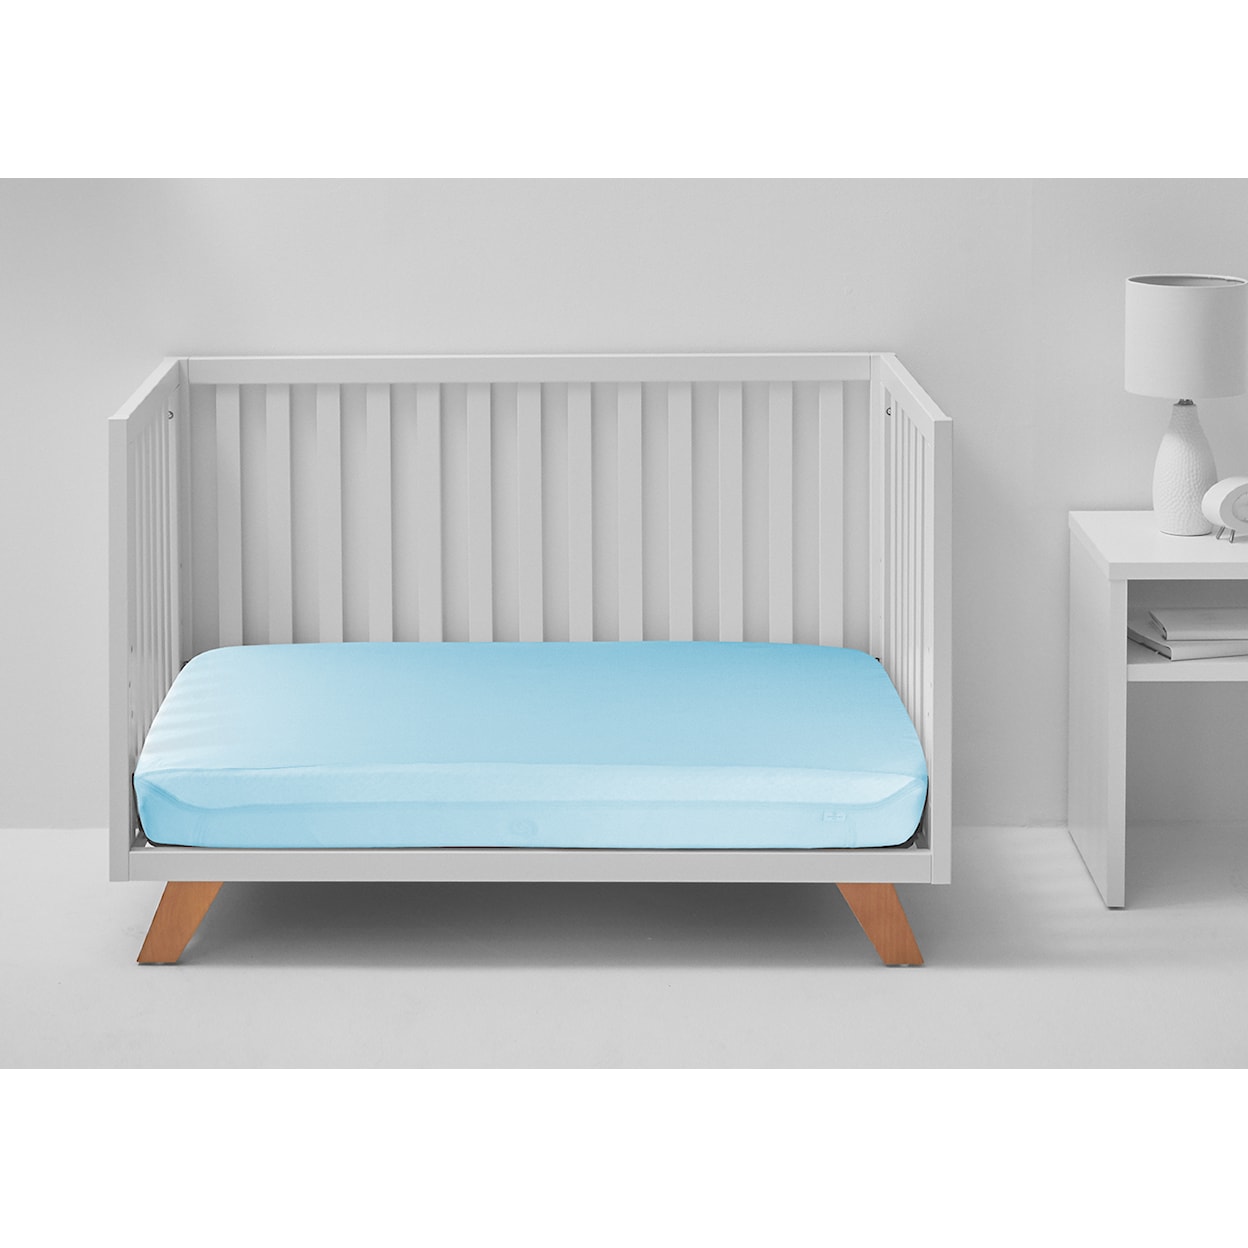 Bedgear Dri-Tec Crib Sheets Dri-Tec Performance Crib Sheets-Blue